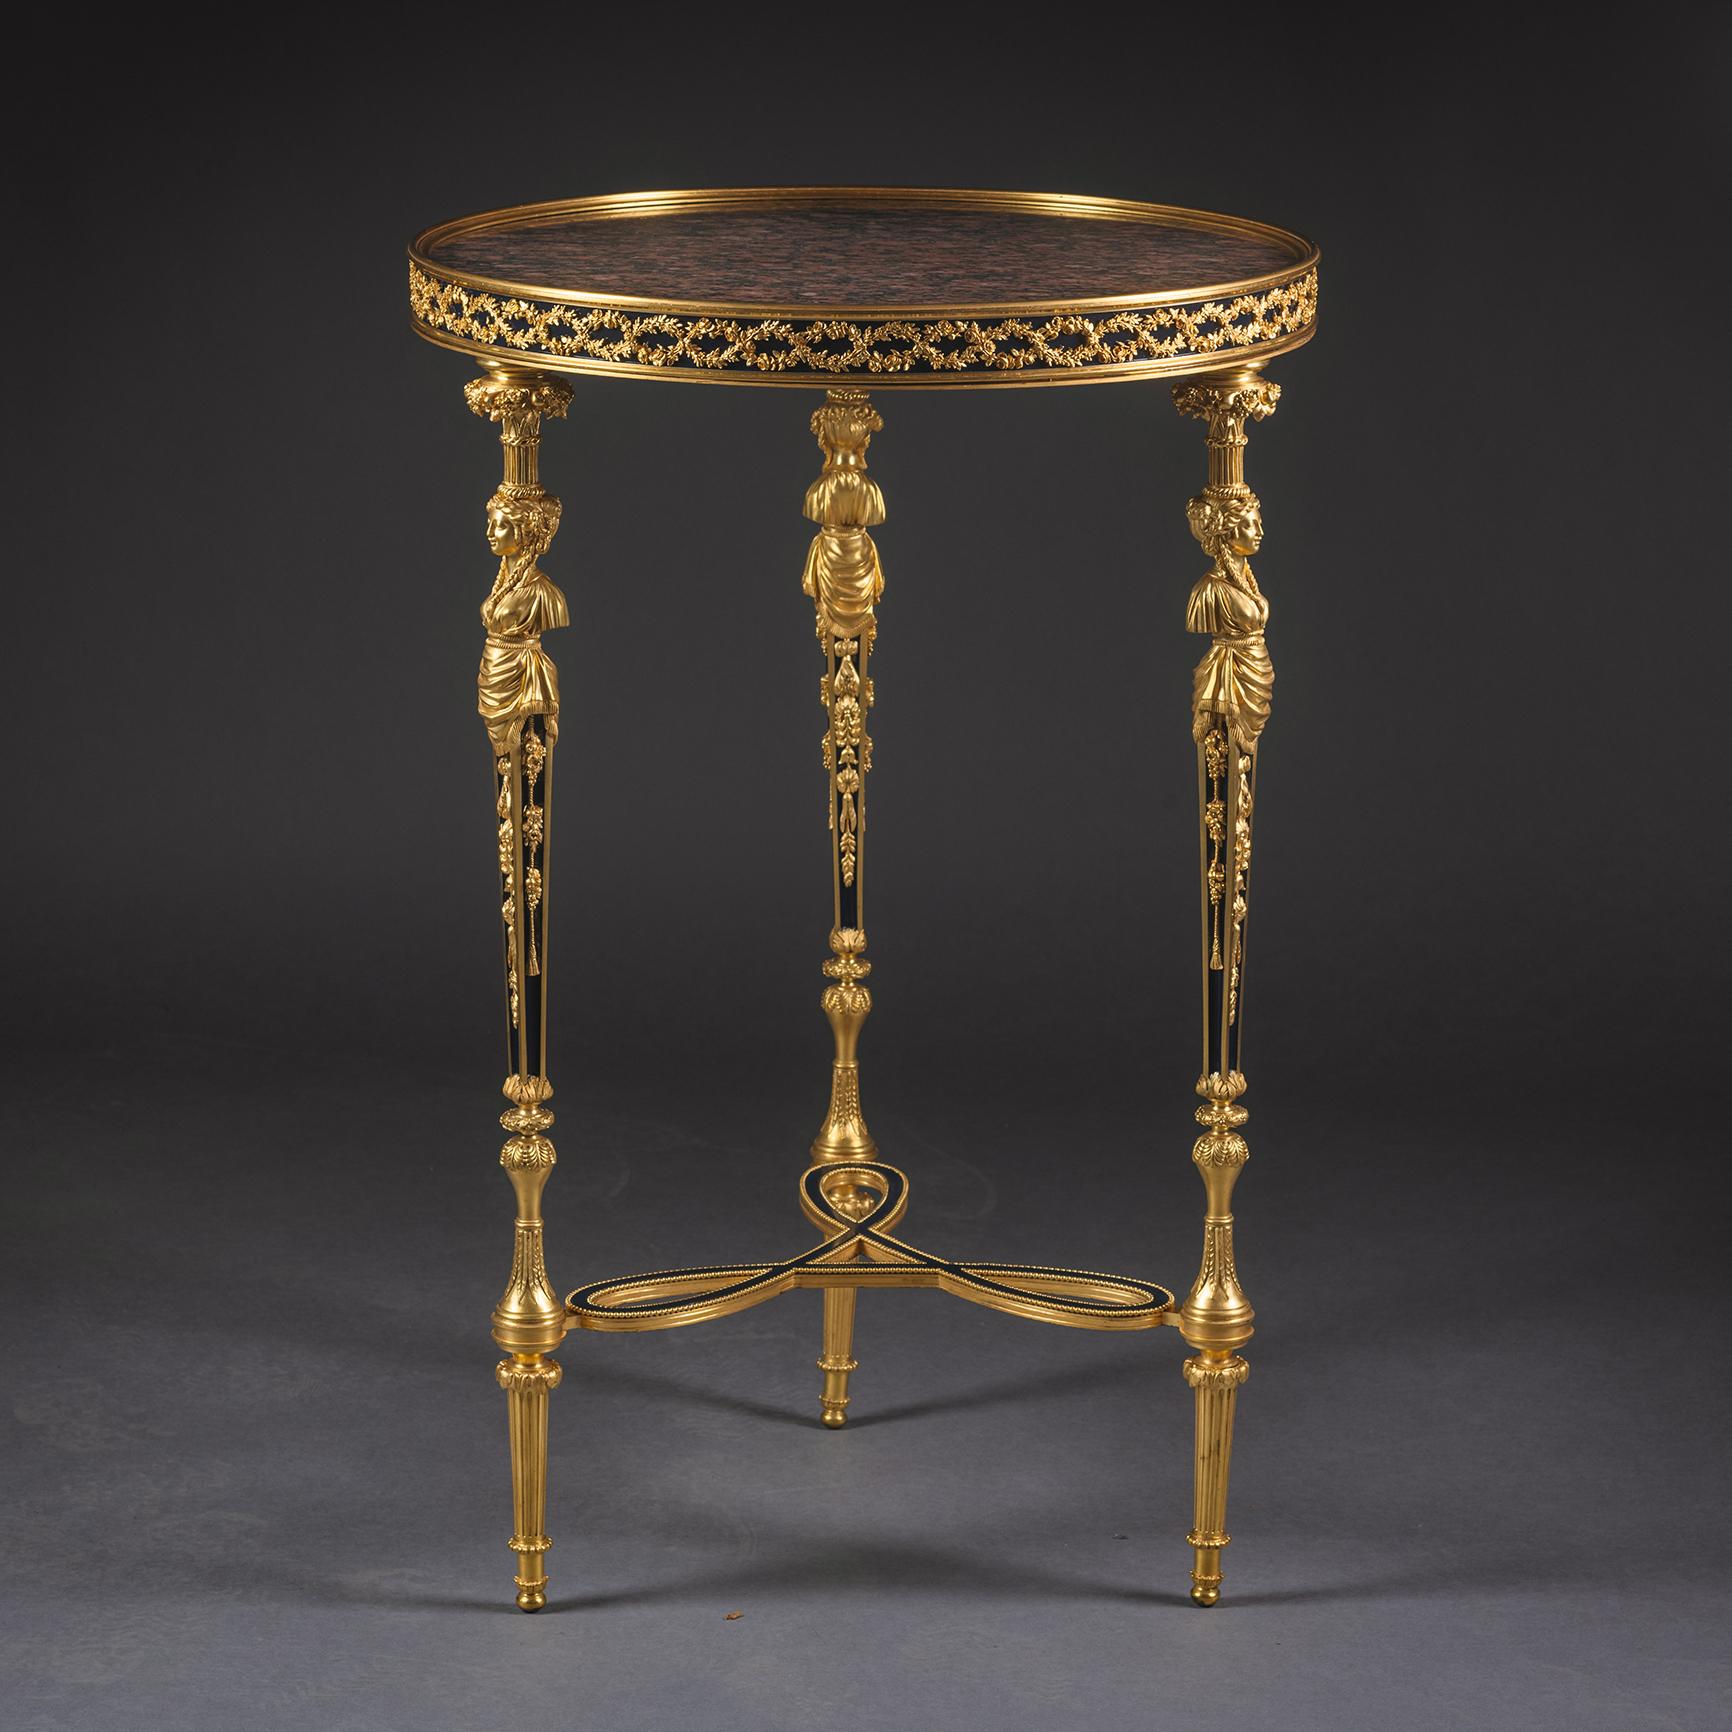 Guéridon en bronze doré de style Louis XVI à la manière d'Adams.

Ce beau guéridon présente un plateau circulaire en granit rouge surmonté d'une frise moulée de lauriers et de roses, reposant sur quatre pieds effilés coiffés de cariatides